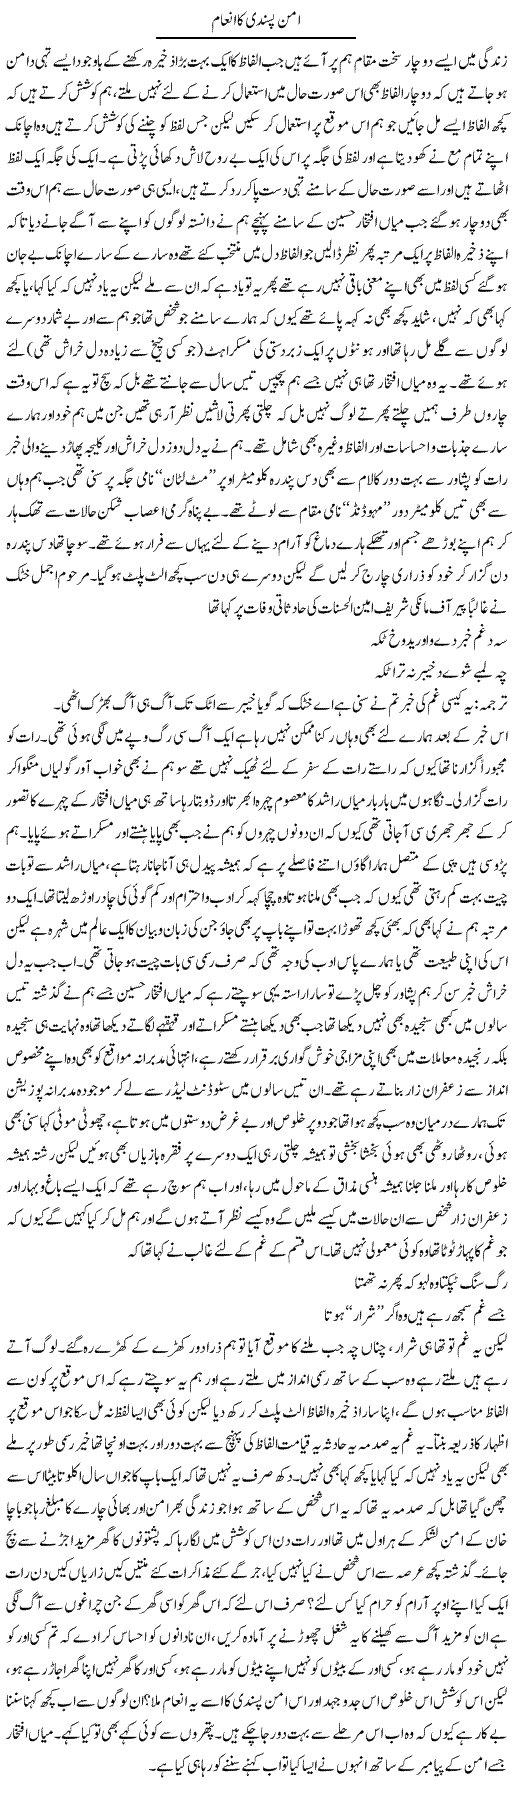 Aman Pasandi Express Column Saadullah Barq 1 August 2010